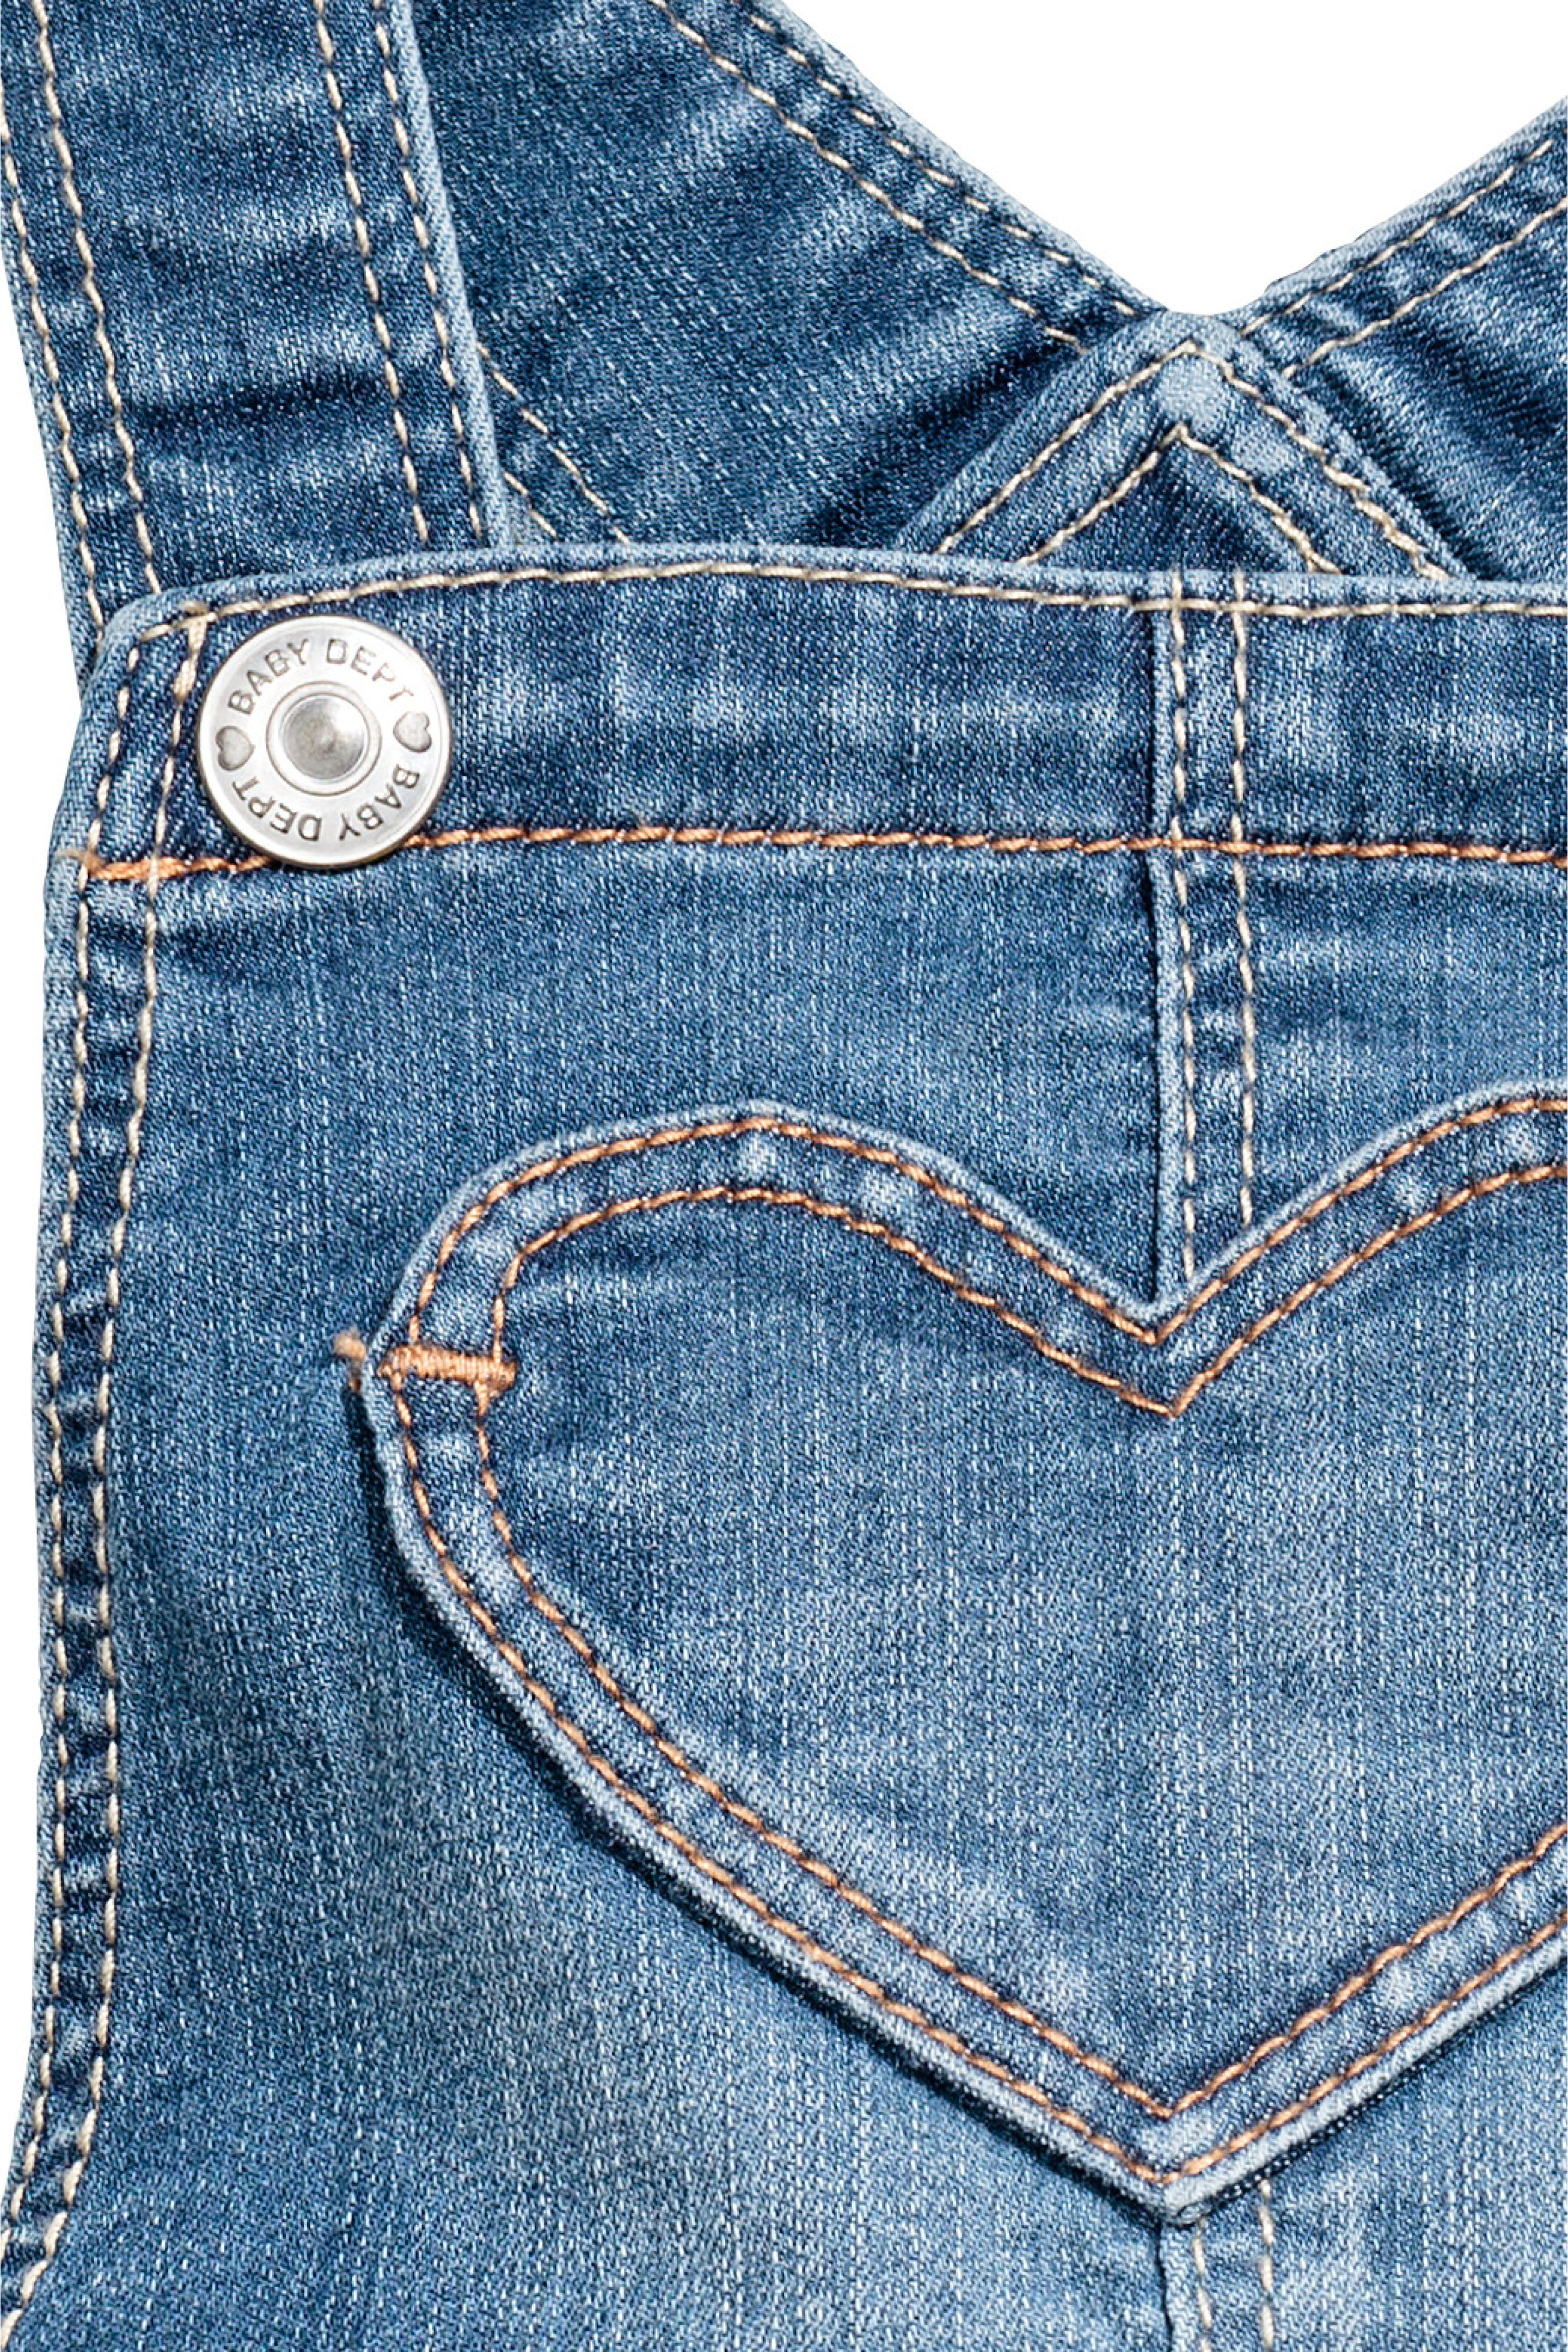 پیشبندار جینز دخترانه 28526 سایز 3 ماه تا 4 سال مارک H&M   *